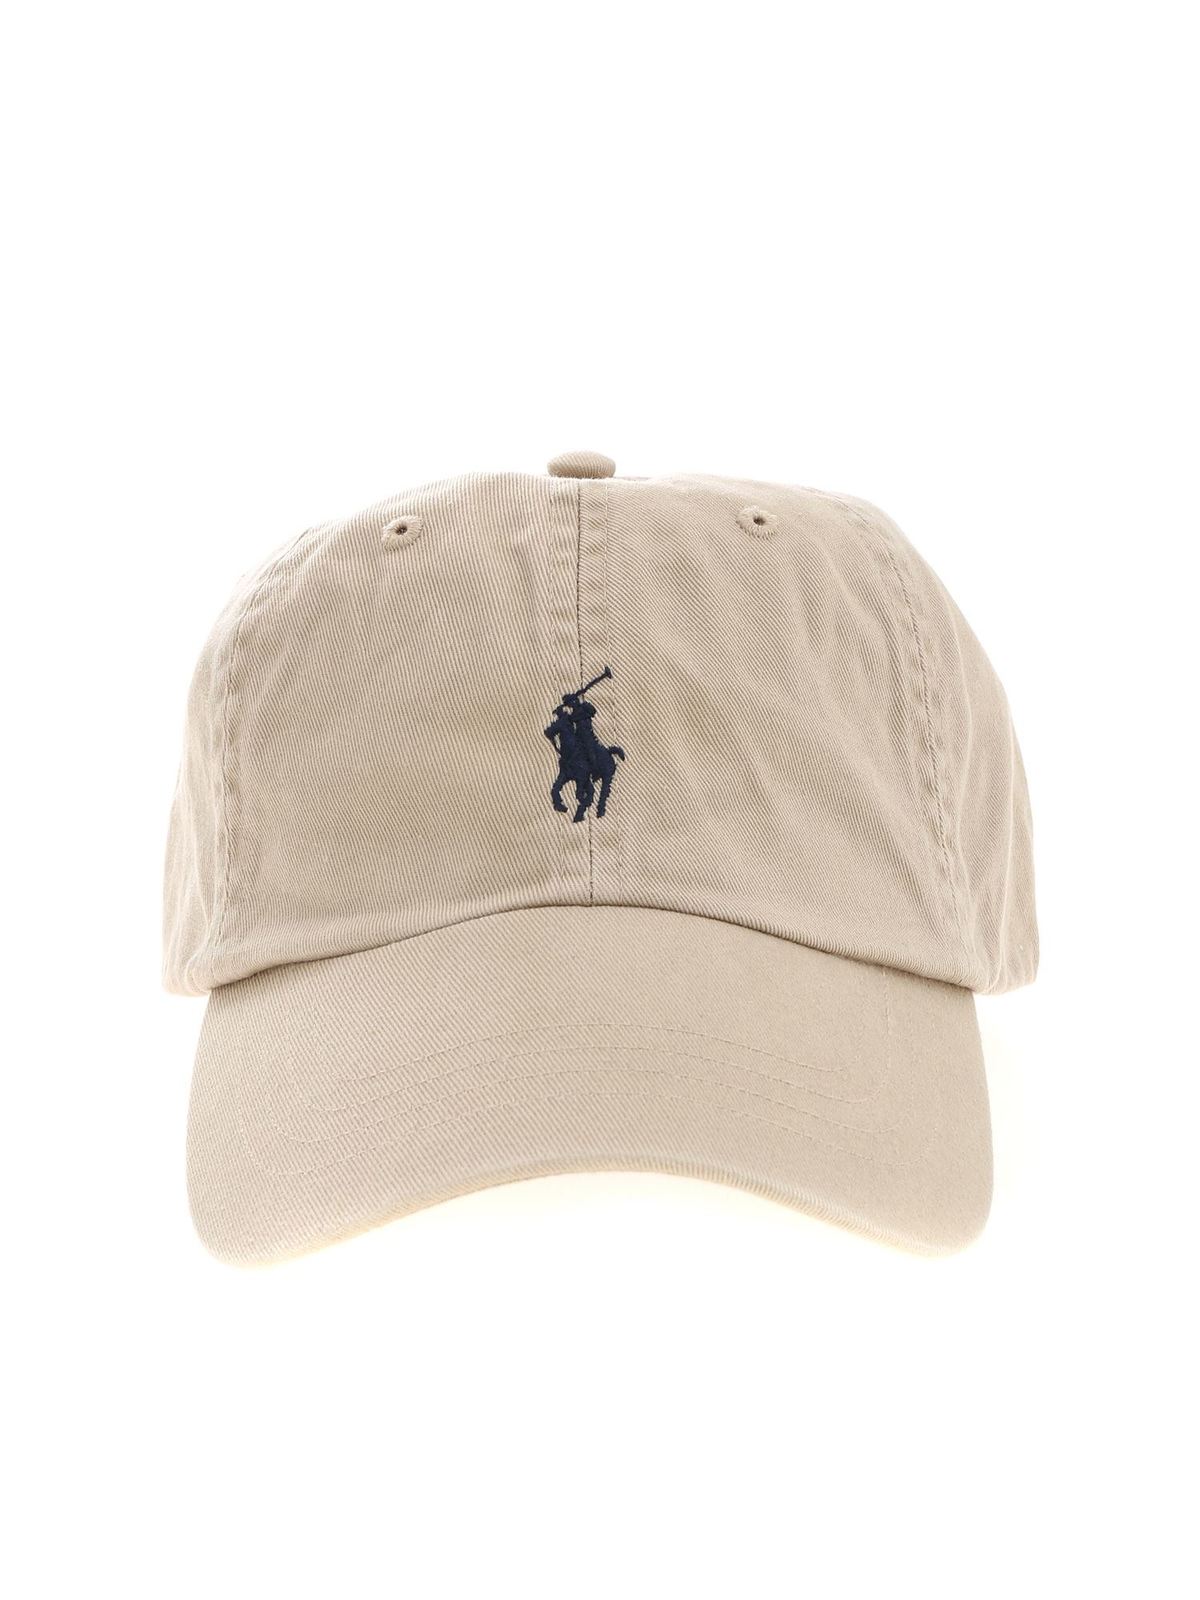 Hats & caps Lauren logo 710548524005 with beige Polo cap in - Ralph Baseball 